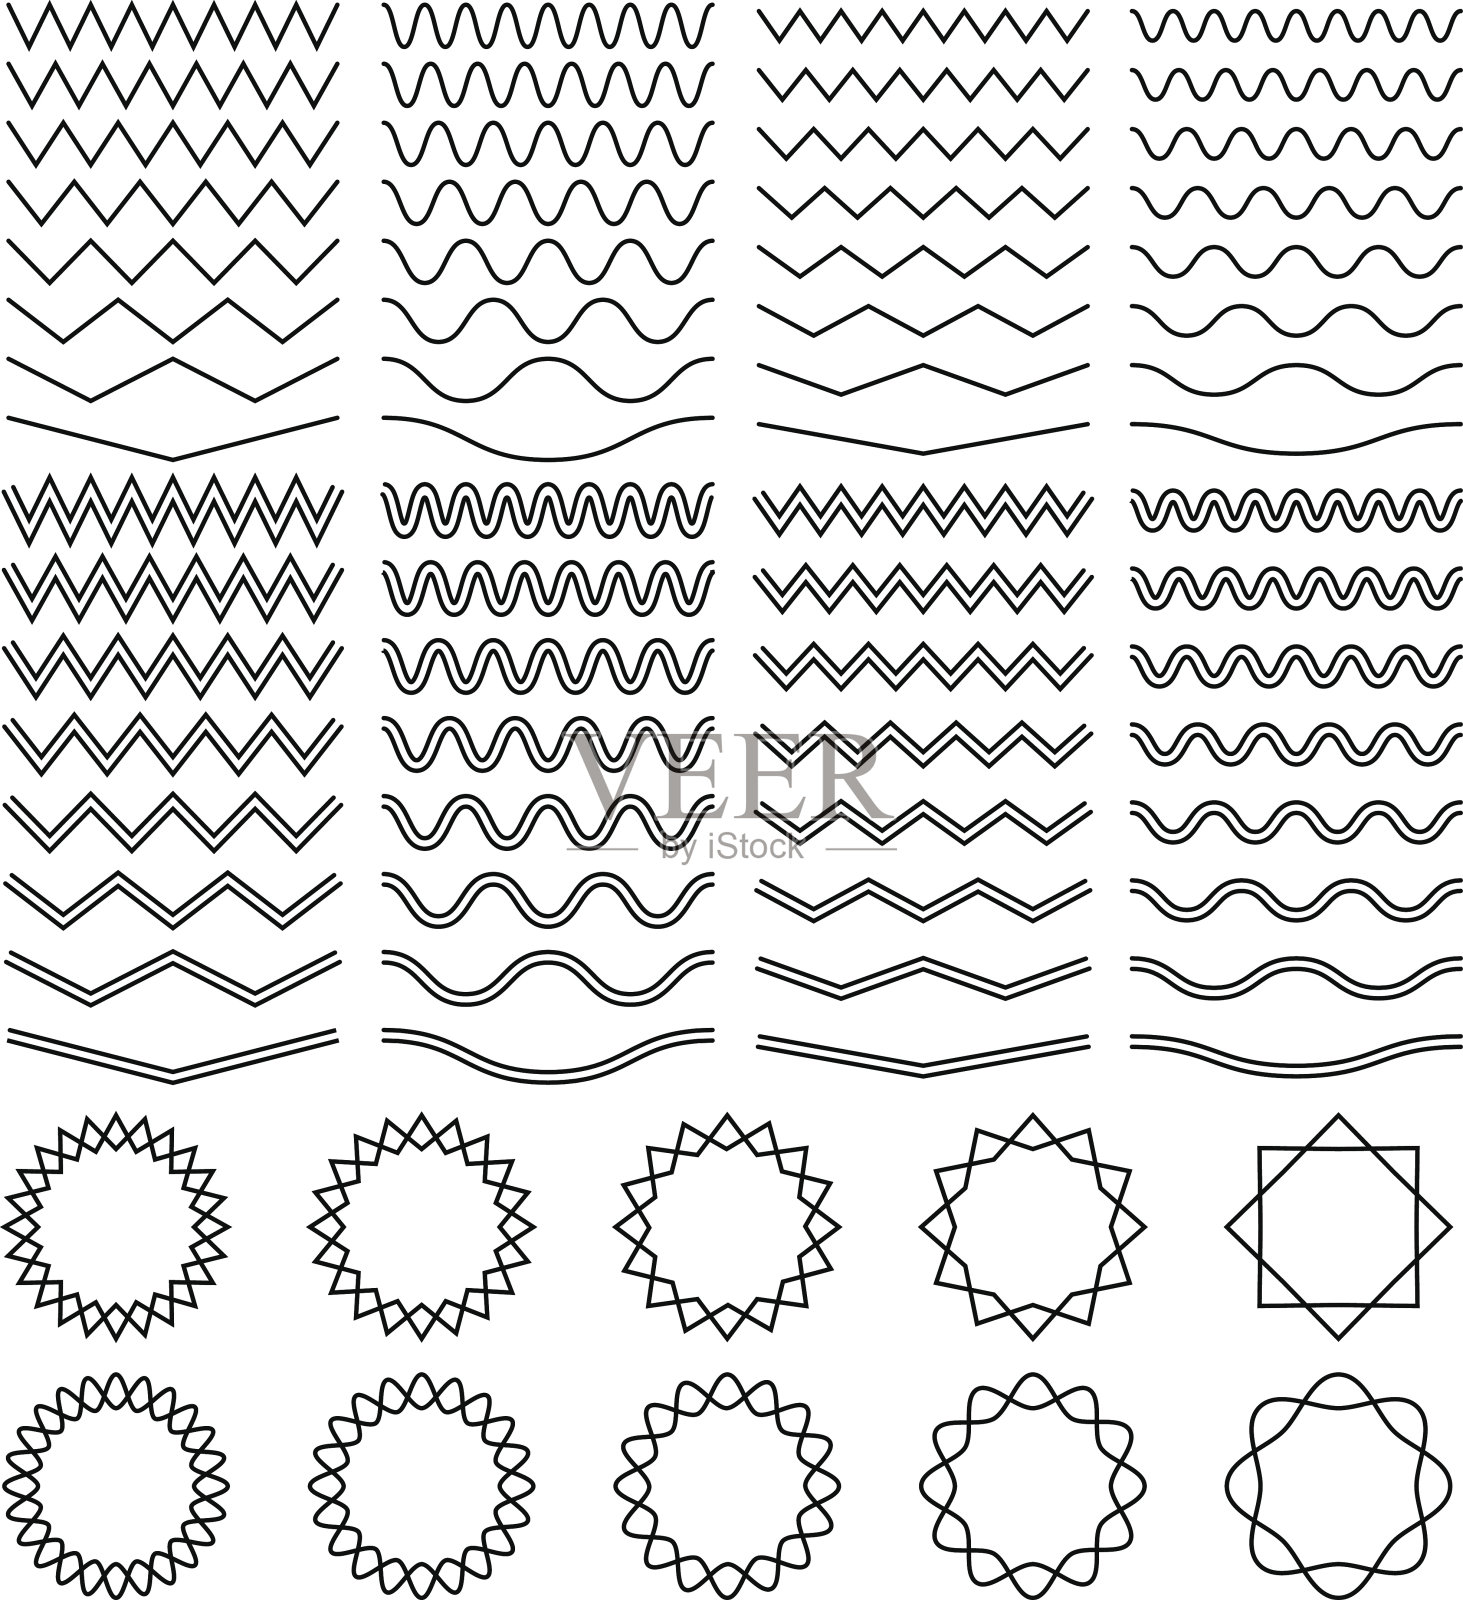 弯曲的波浪和锯齿状的条纹线和圆形的锯齿状的帧向量集插画图片素材